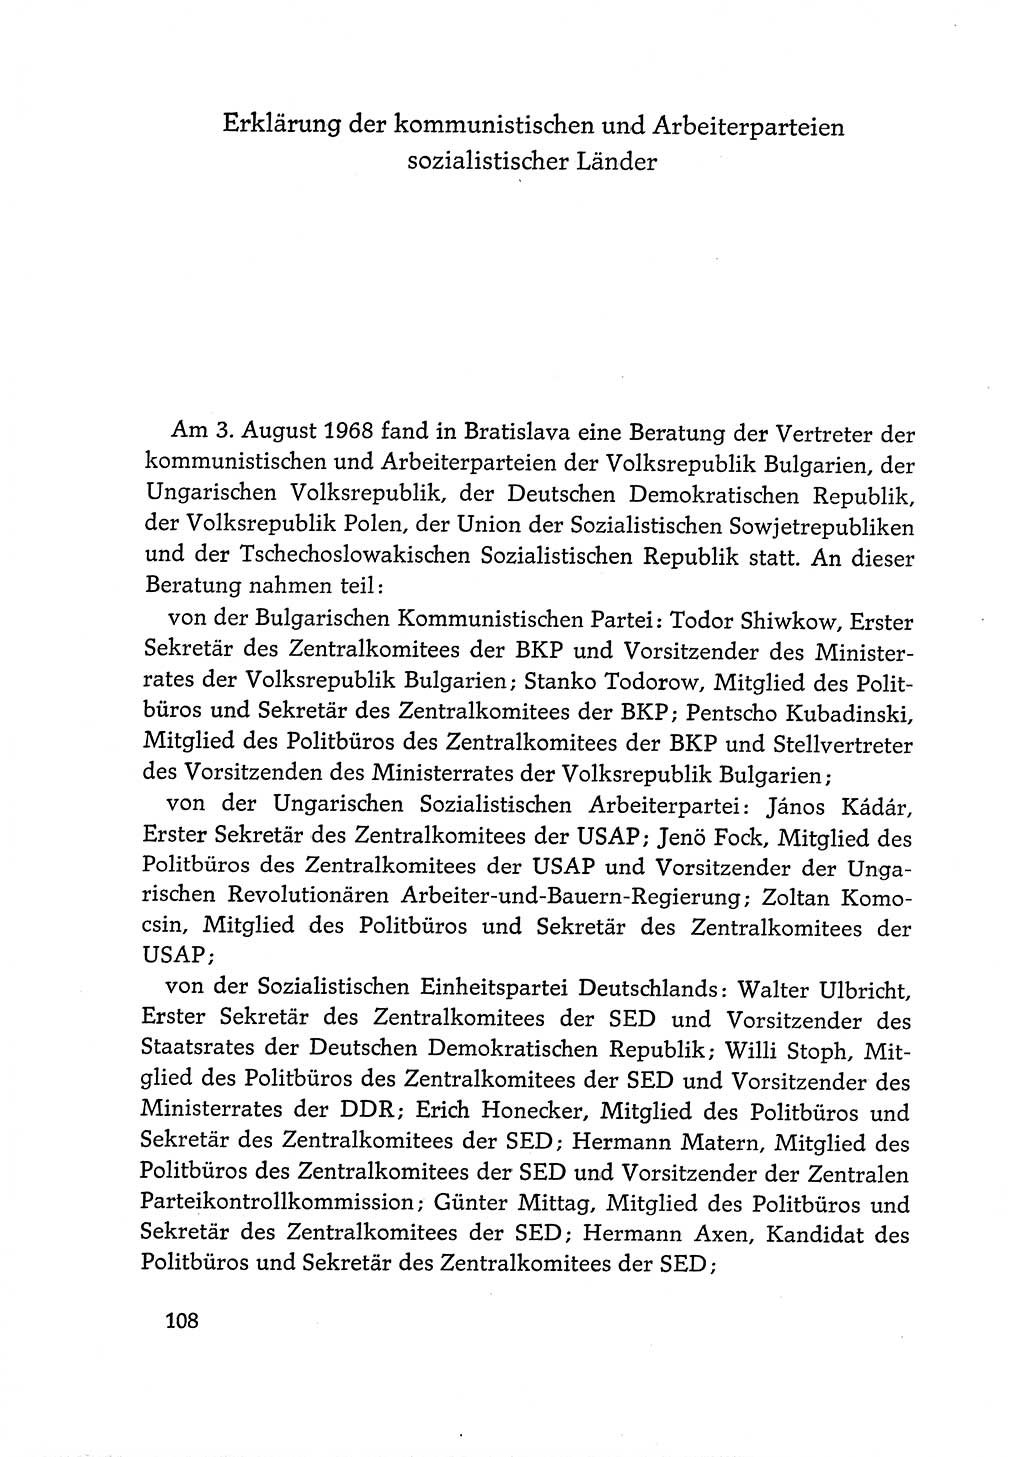 Dokumente der Sozialistischen Einheitspartei Deutschlands (SED) [Deutsche Demokratische Republik (DDR)] 1968-1969, Seite 108 (Dok. SED DDR 1968-1969, S. 108)